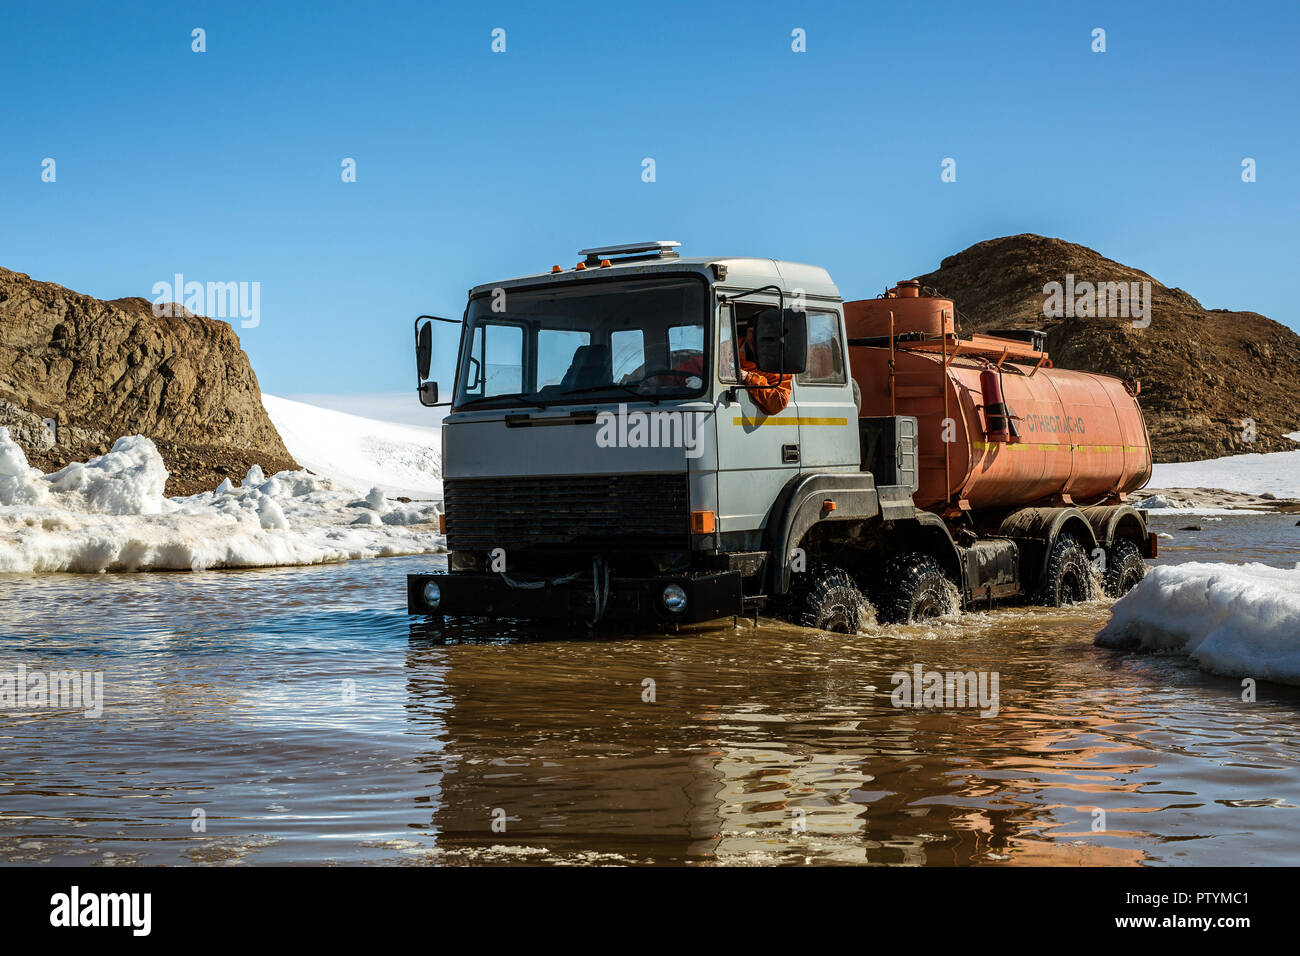 Les progrès réalisés, l'Antarctique, 04 Janvier 2017 : Un camion d'essence sur la plate-forme Kamaz s'étend le long de la hors-route du printemps pour faire le plein de véhicules à des sites. Anta Banque D'Images